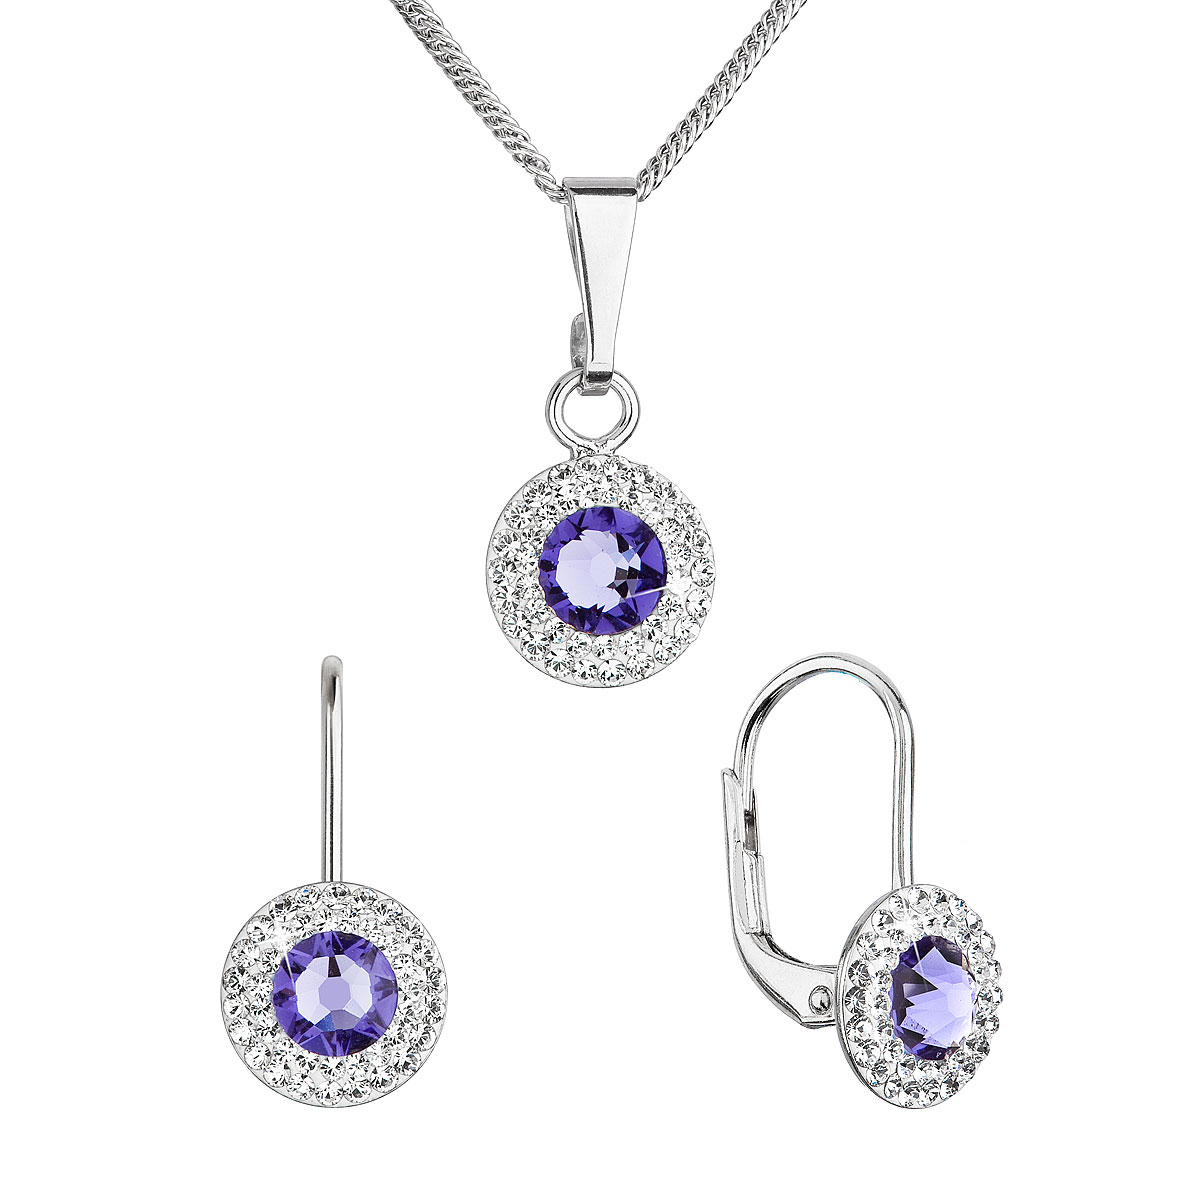 Evolution Group Sada šperků s krystaly Swarovski náušnice a přívěsek fialové kulaté 39109.3 tanzanite